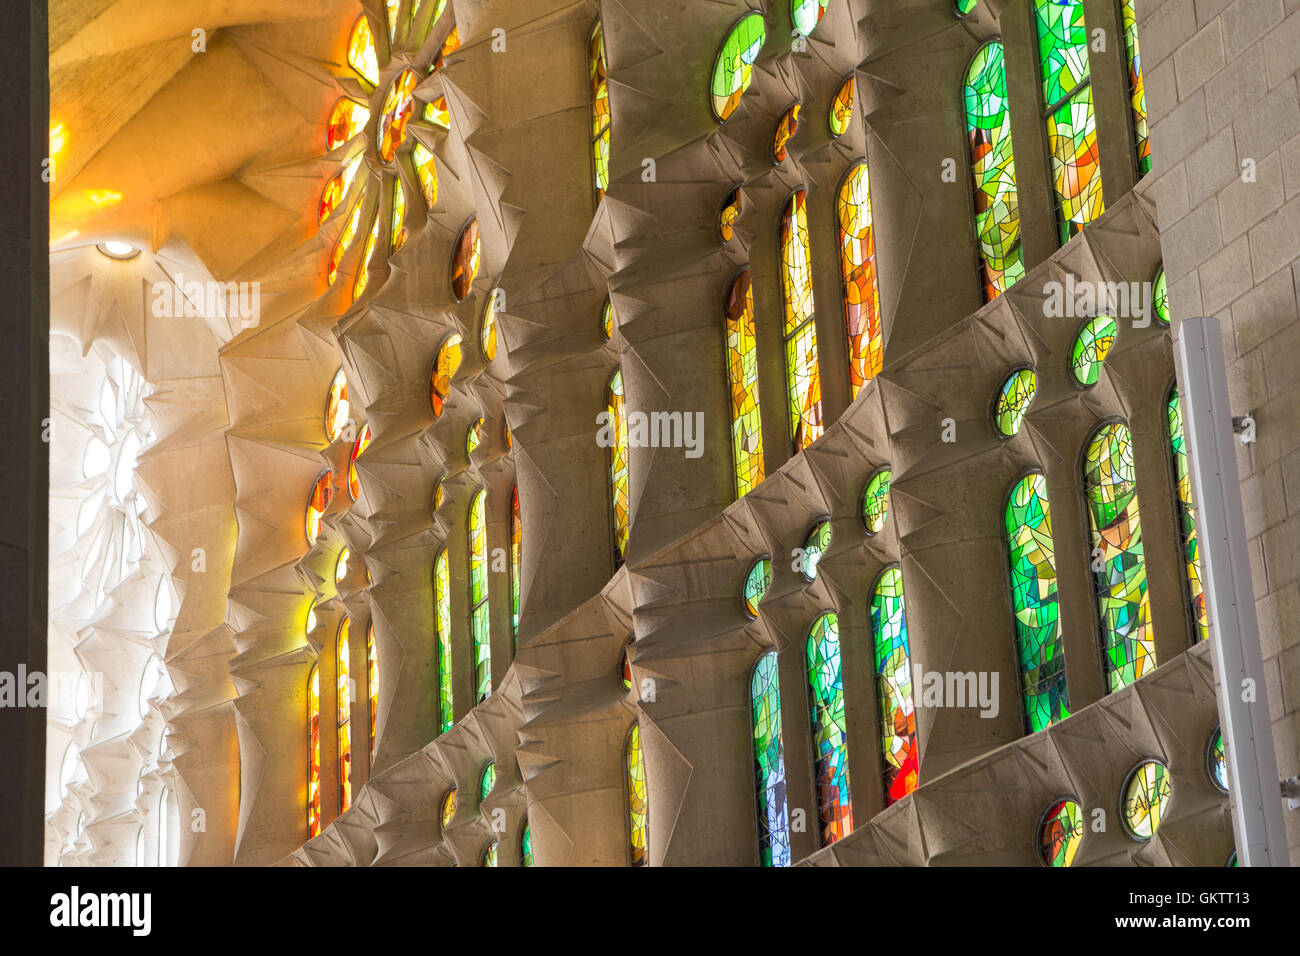 Intérieur de la cathédrale de la Sagrada Familia, Barcelone, Espagne Banque D'Images